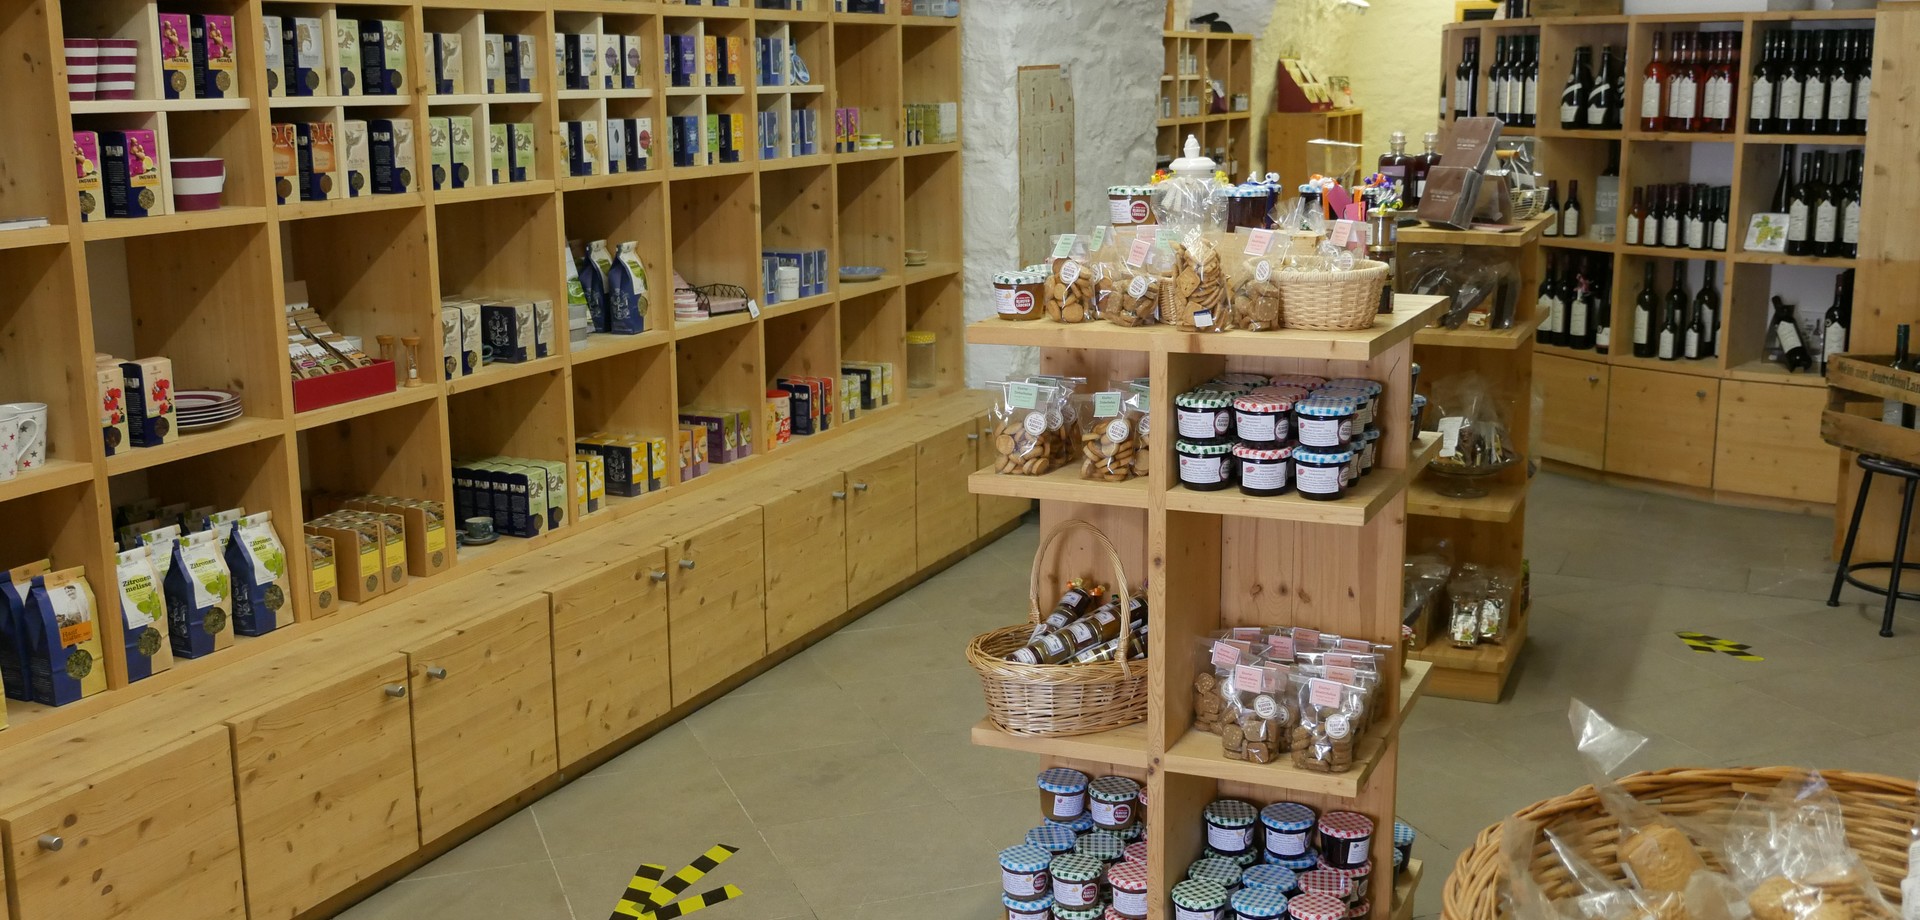 Blick in den Klosterladen mit vielen Produkten in Regalen und auf Tischen.